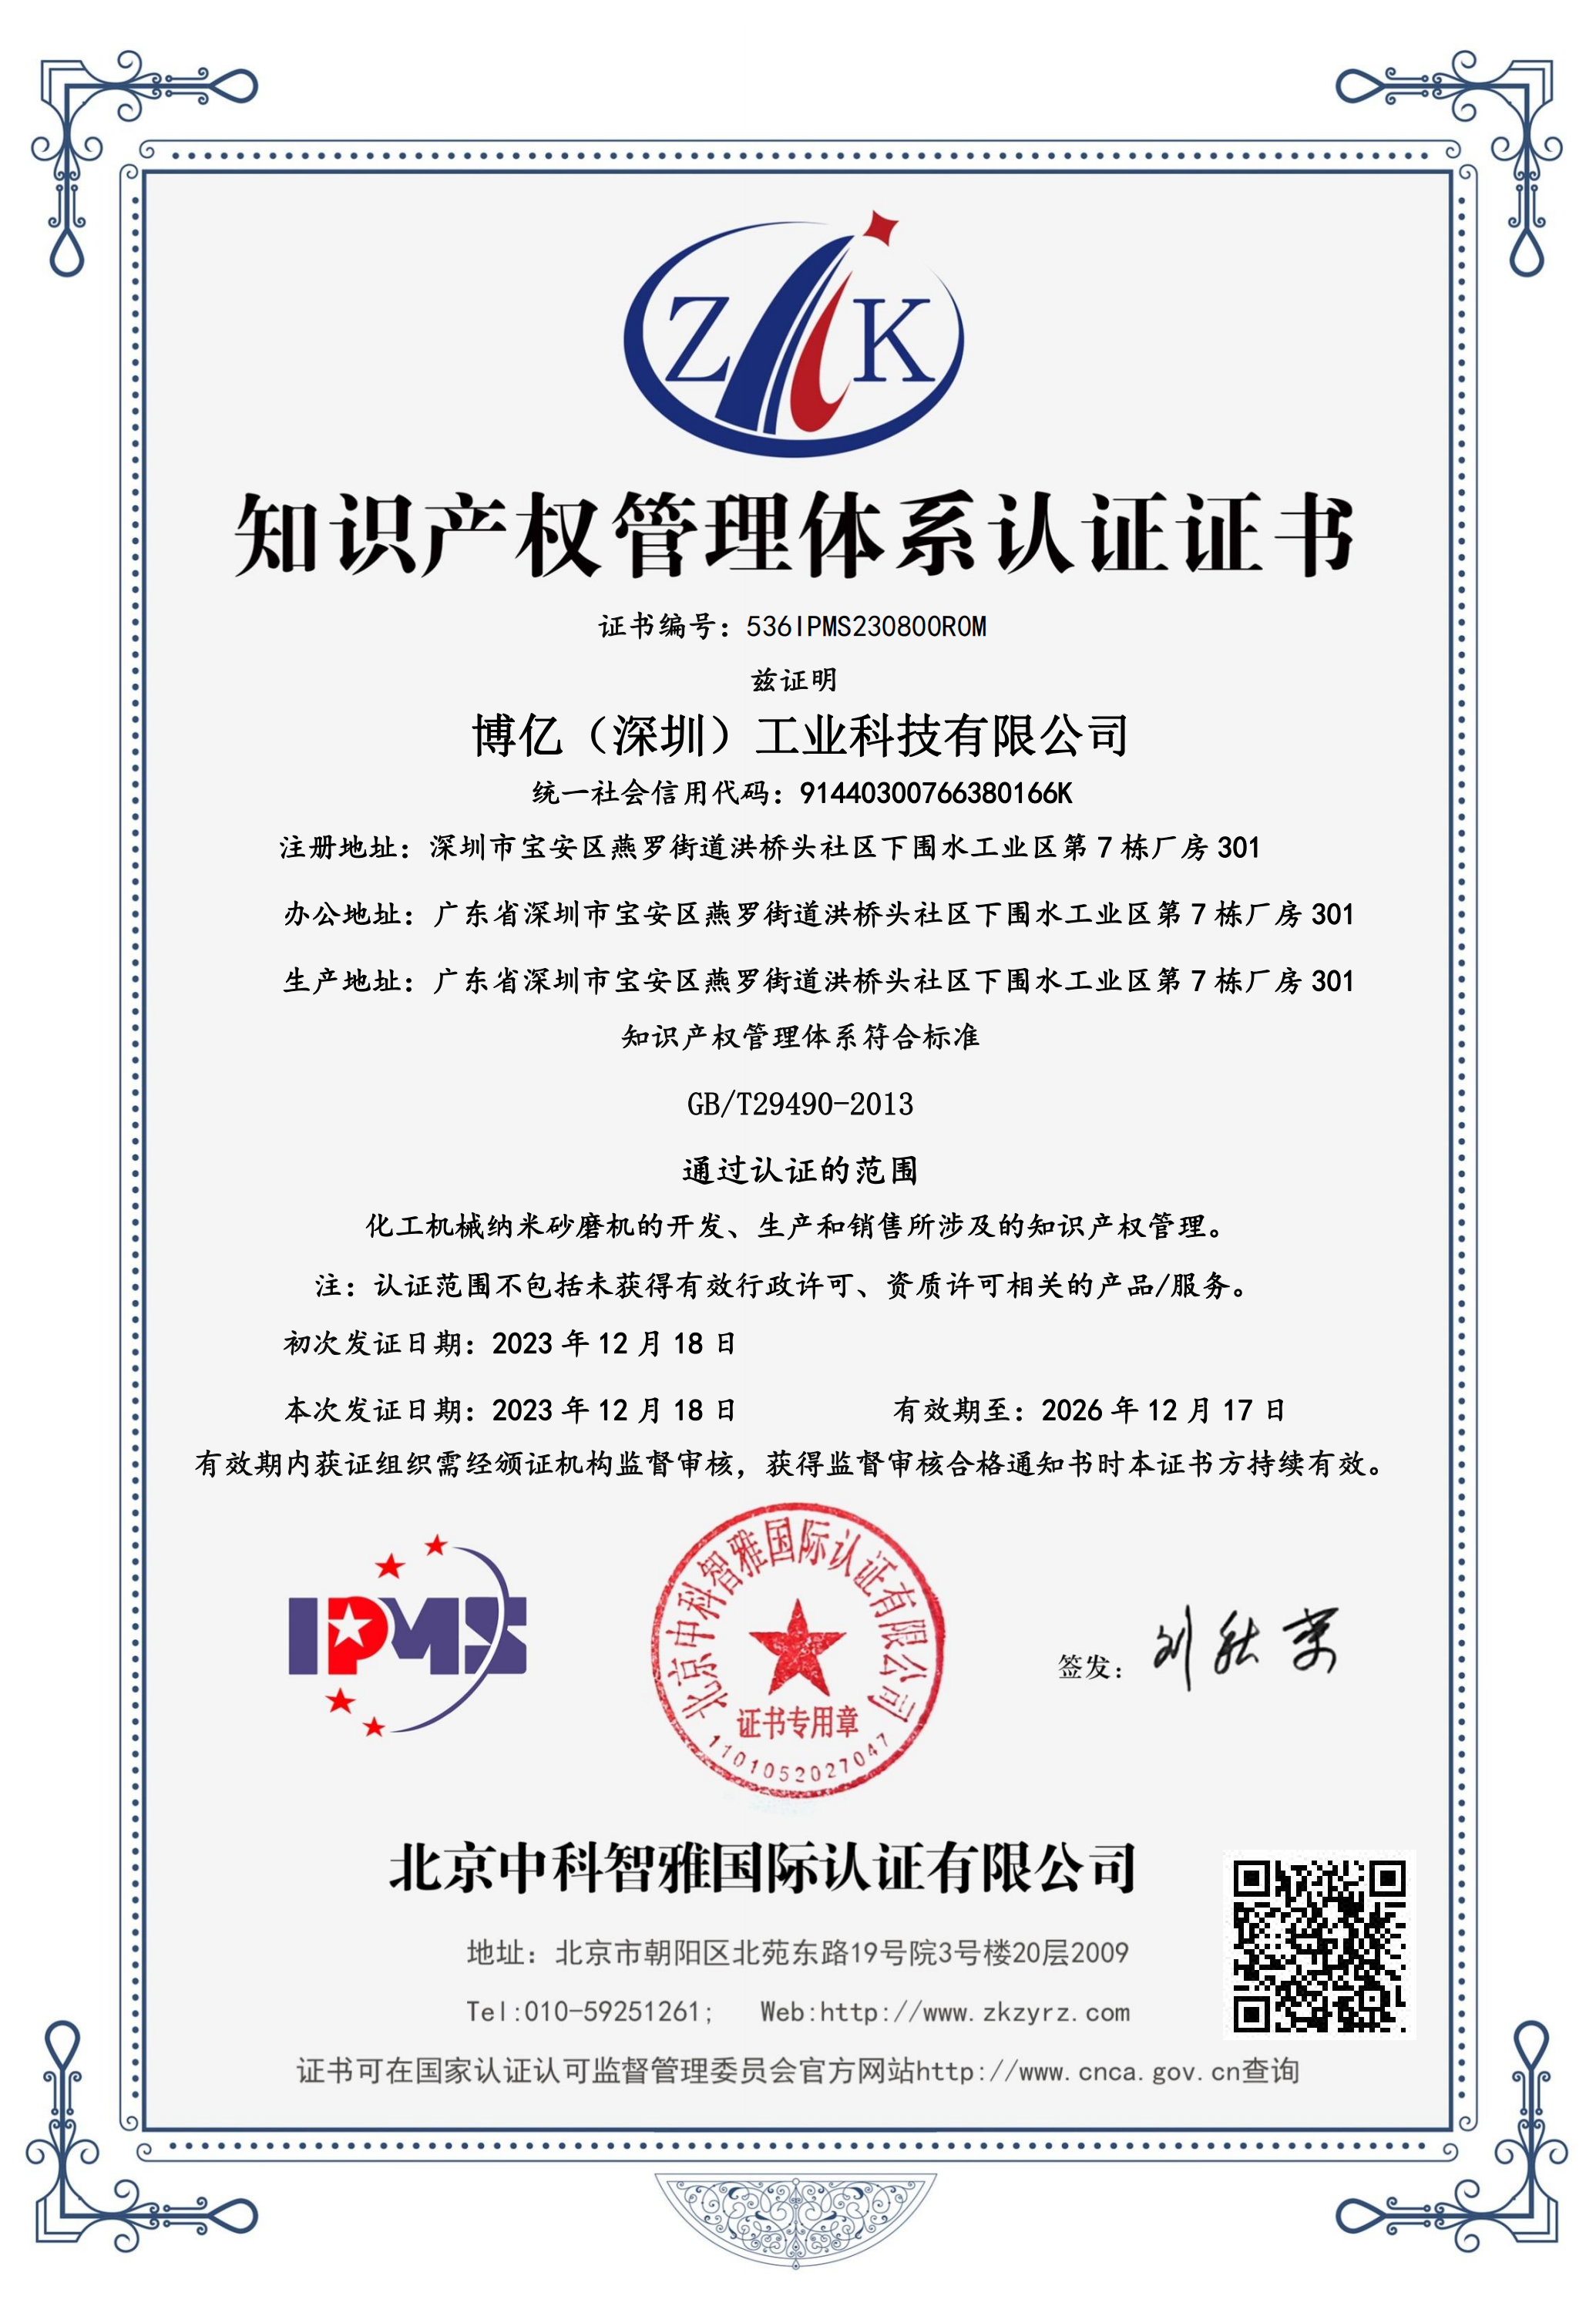 知识产权管理体系认证证书中文(IPMS)_00.png